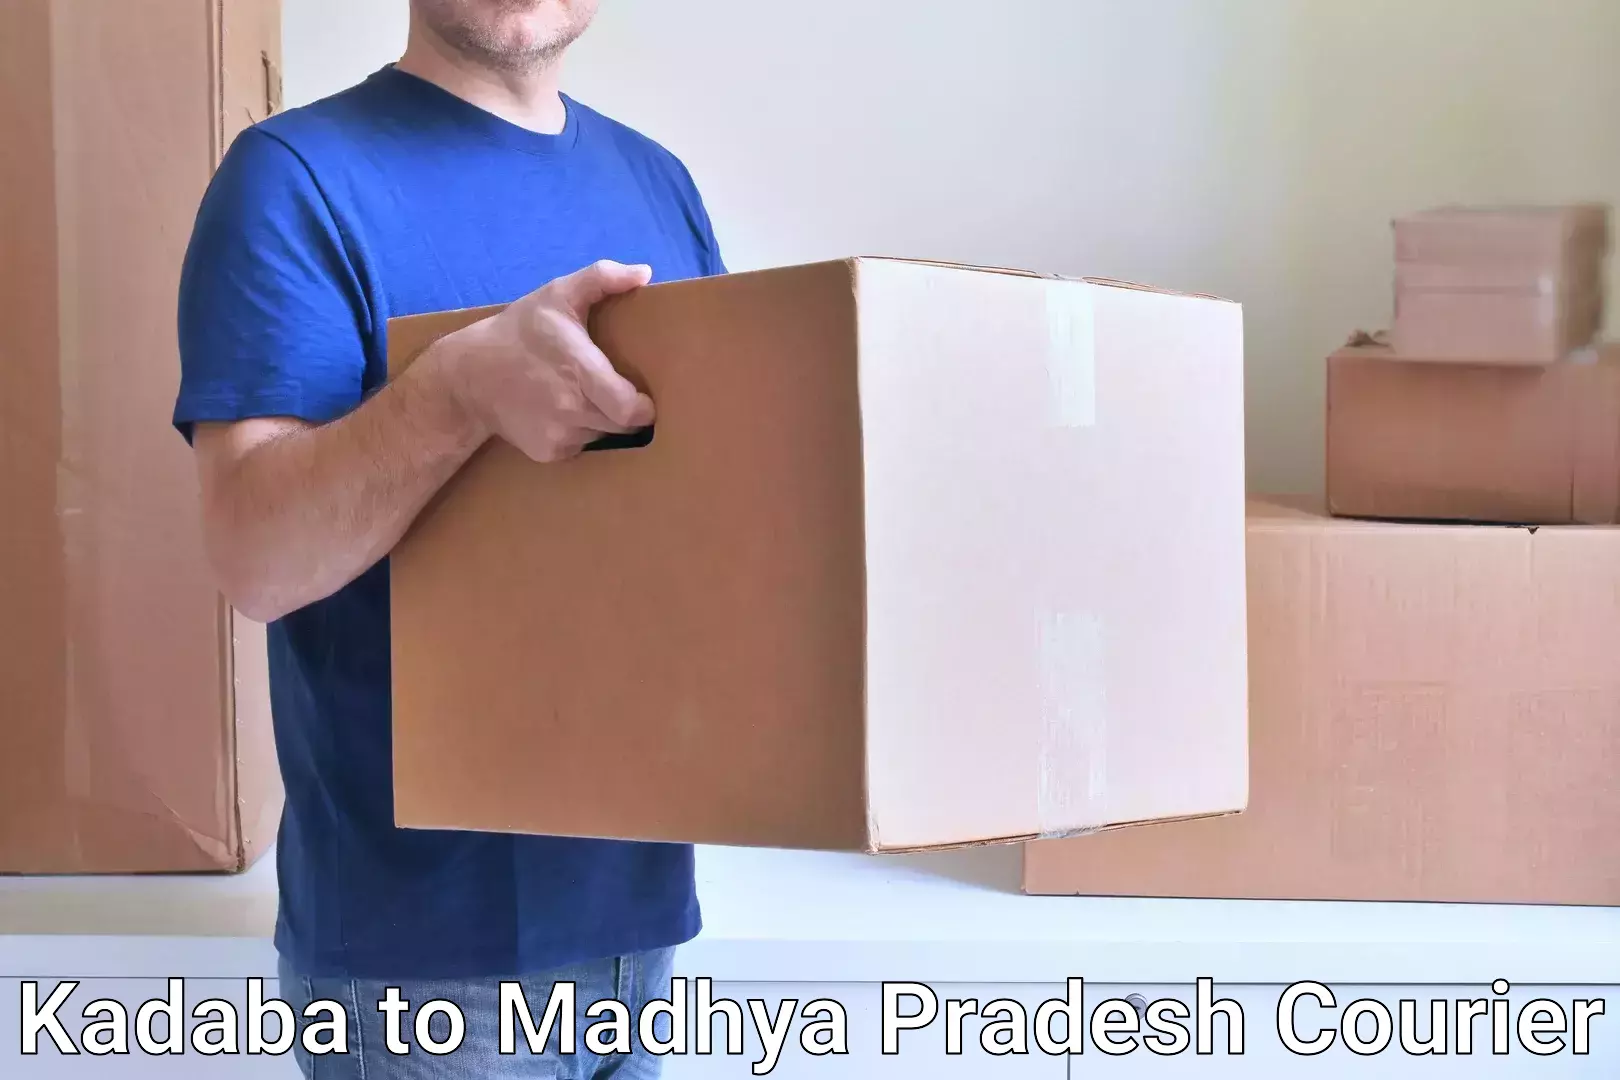 Shipping and handling Kadaba to Vidisha